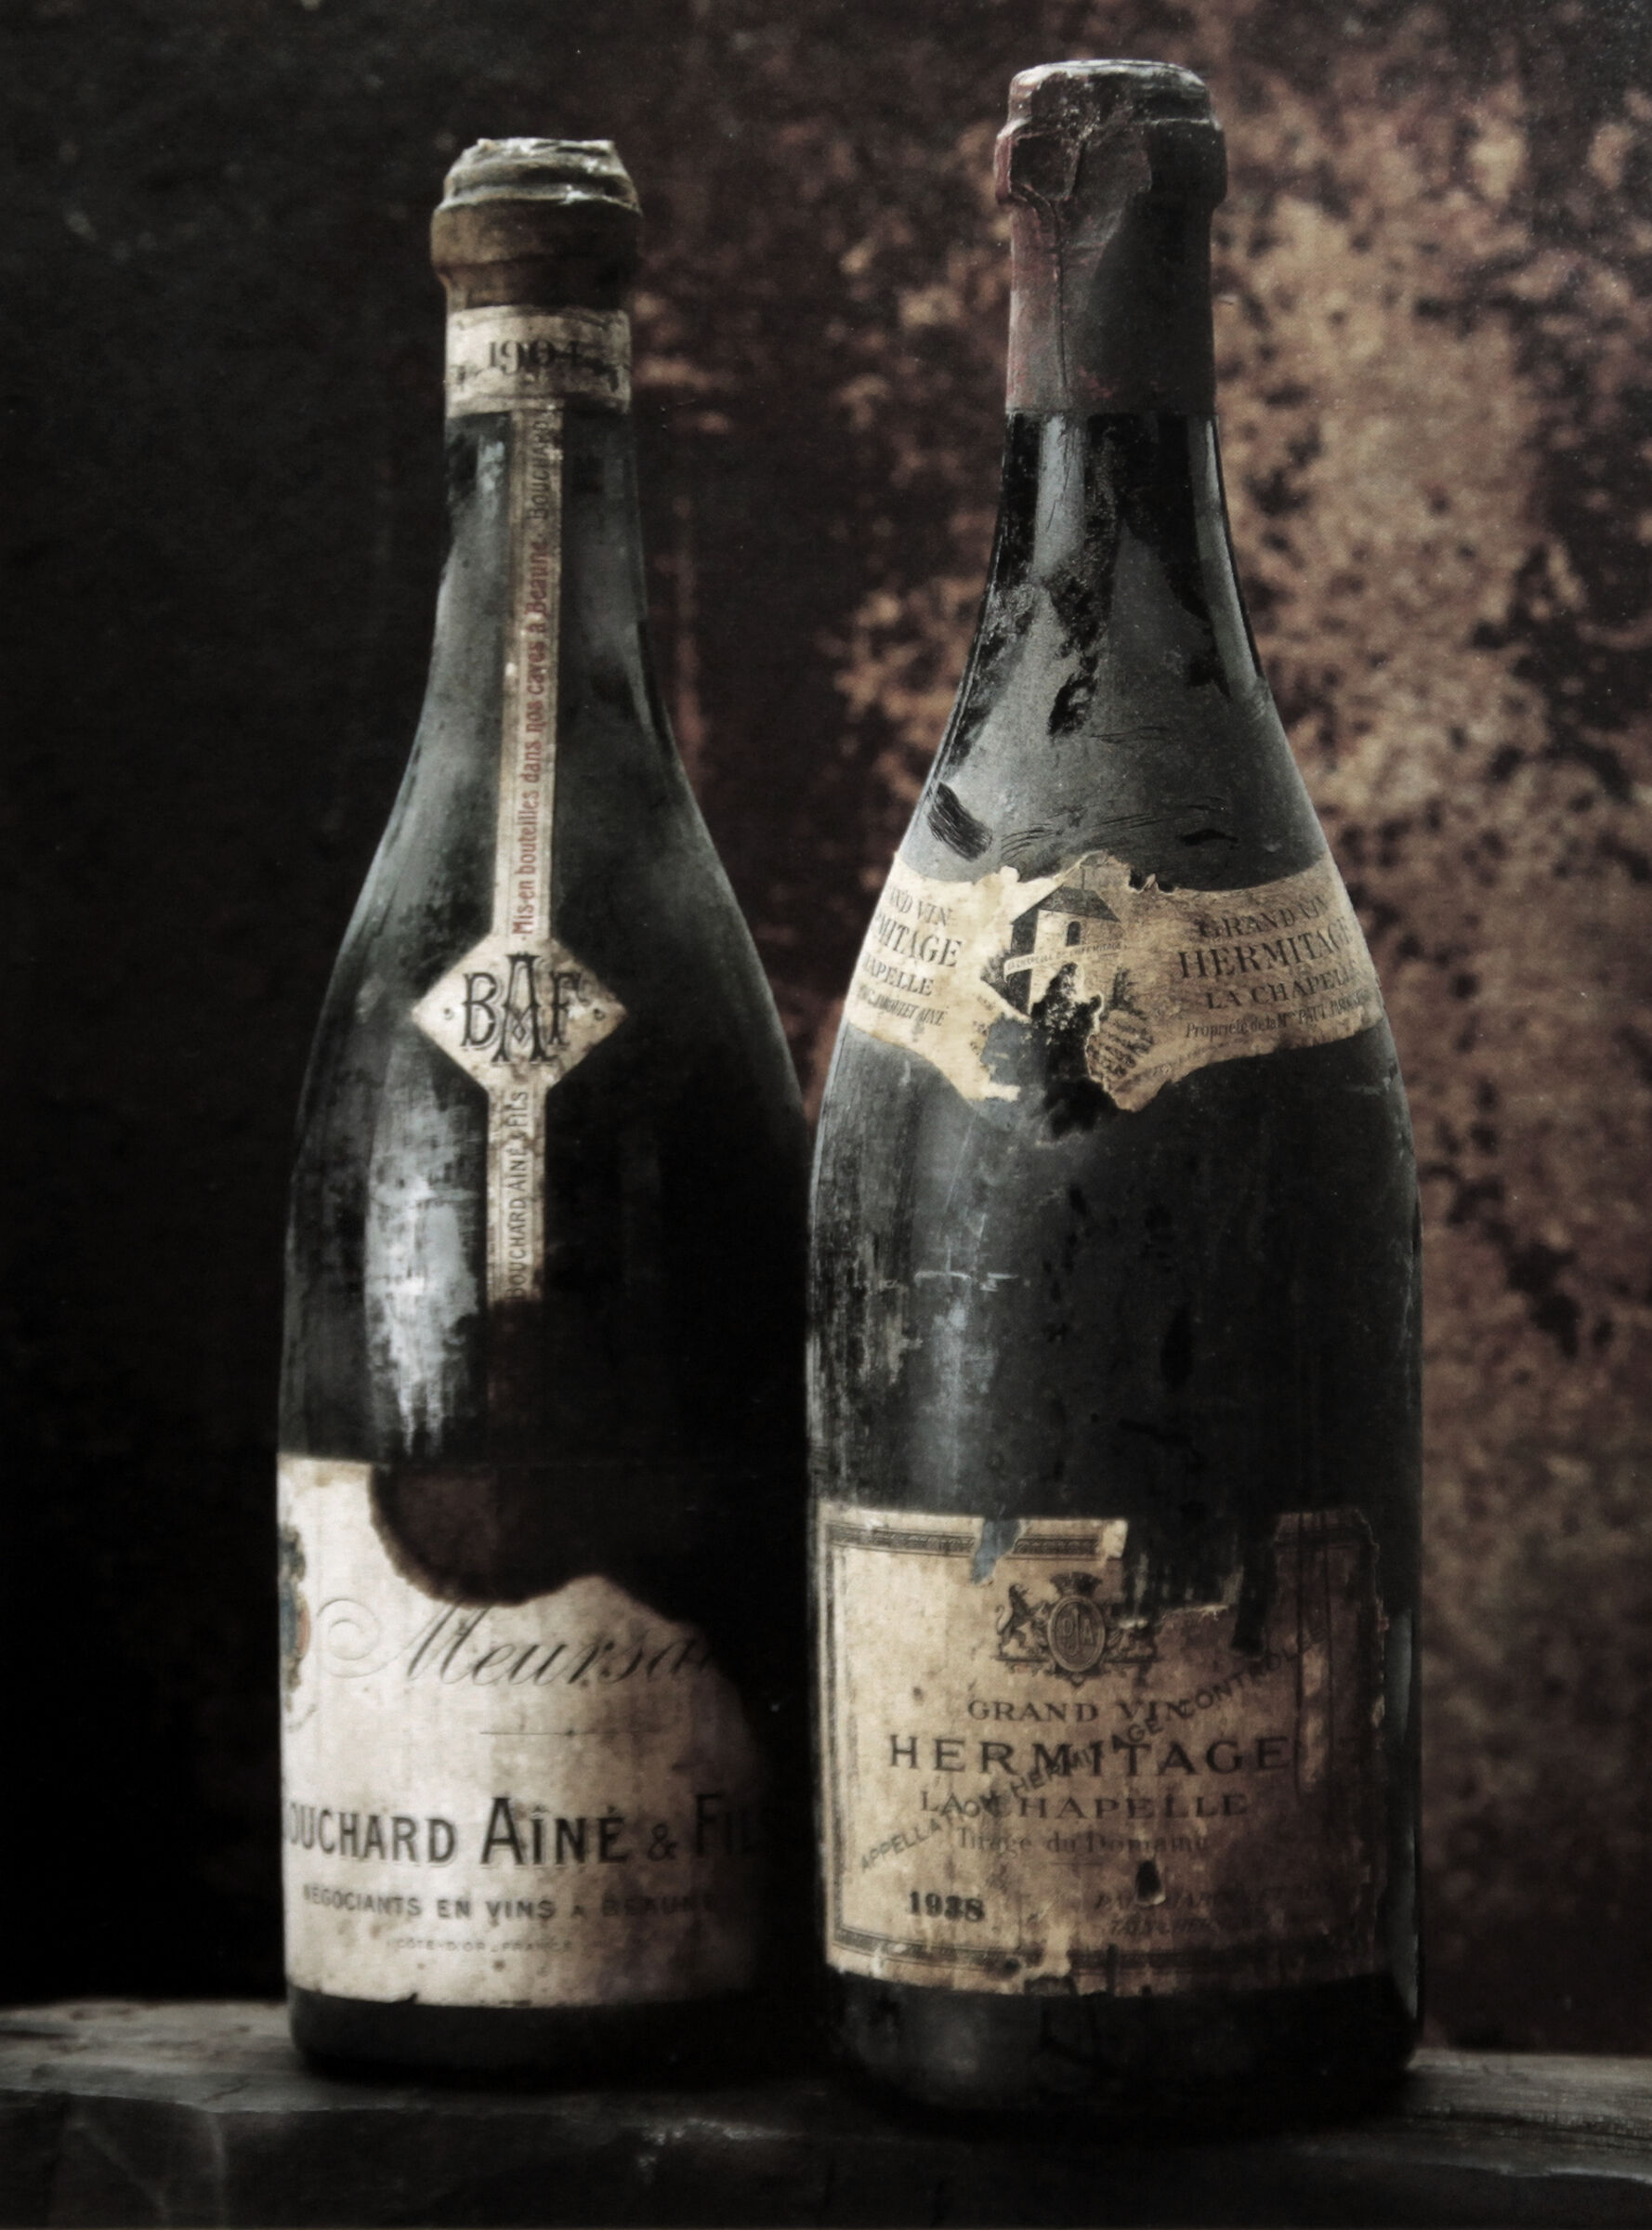 Bottled in 1938...